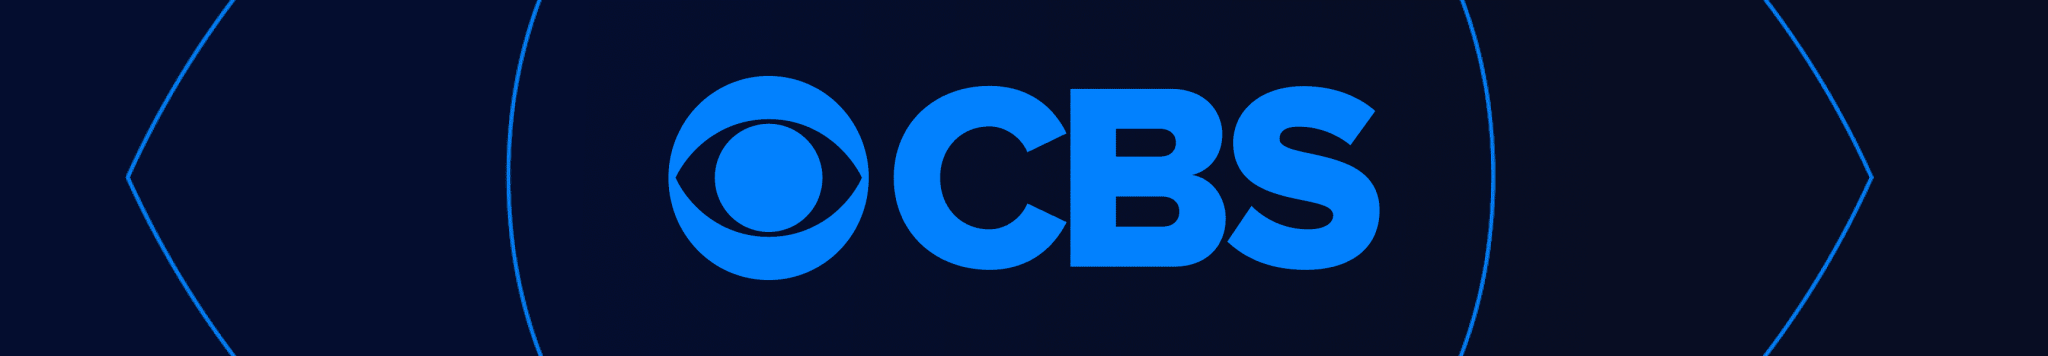 CBS Unterhaltung Roben